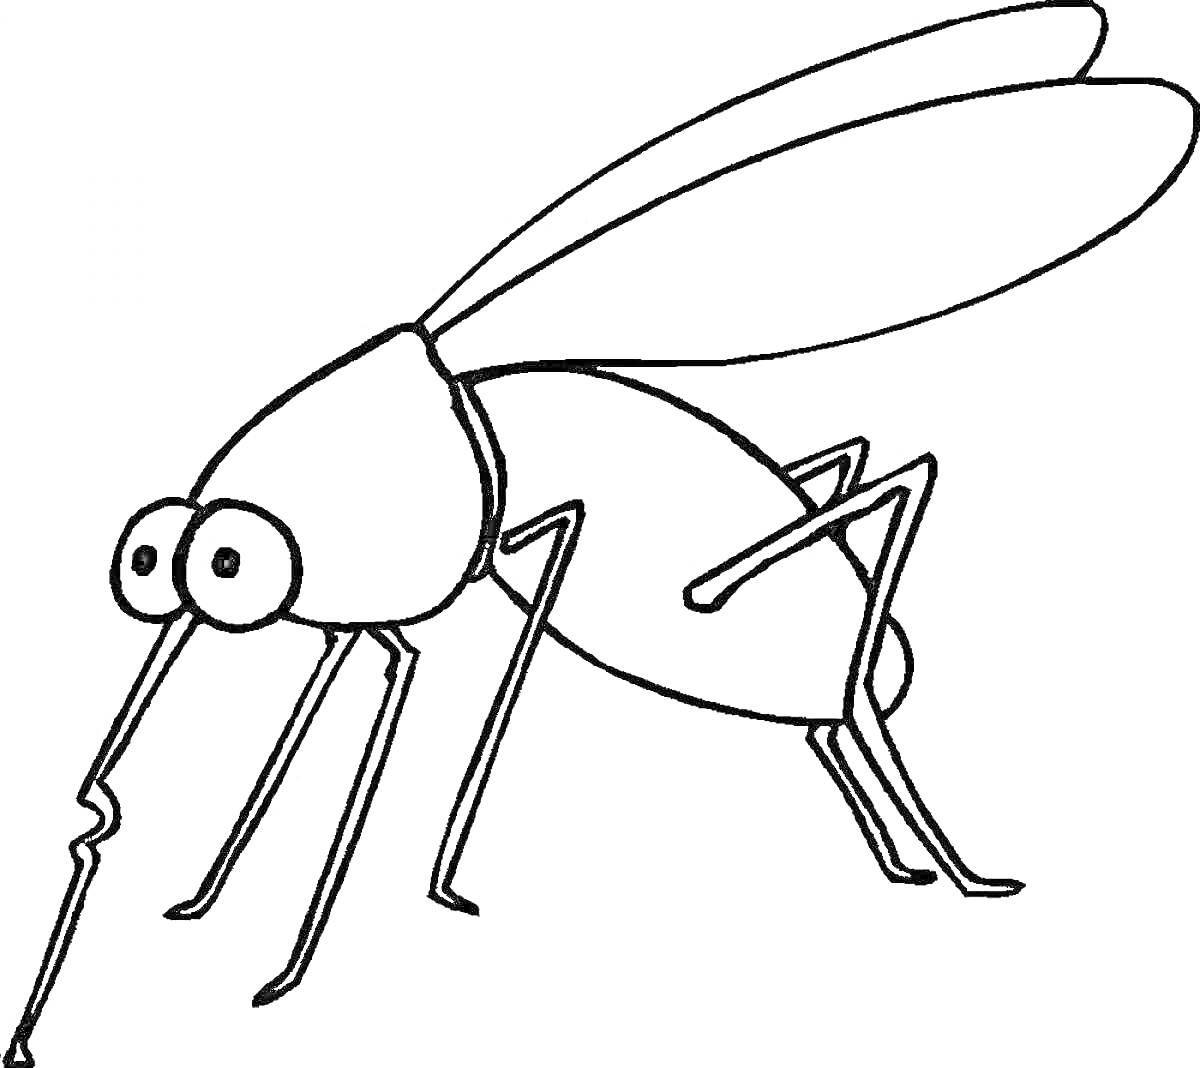 Комар с большими глазами и длинными лапами